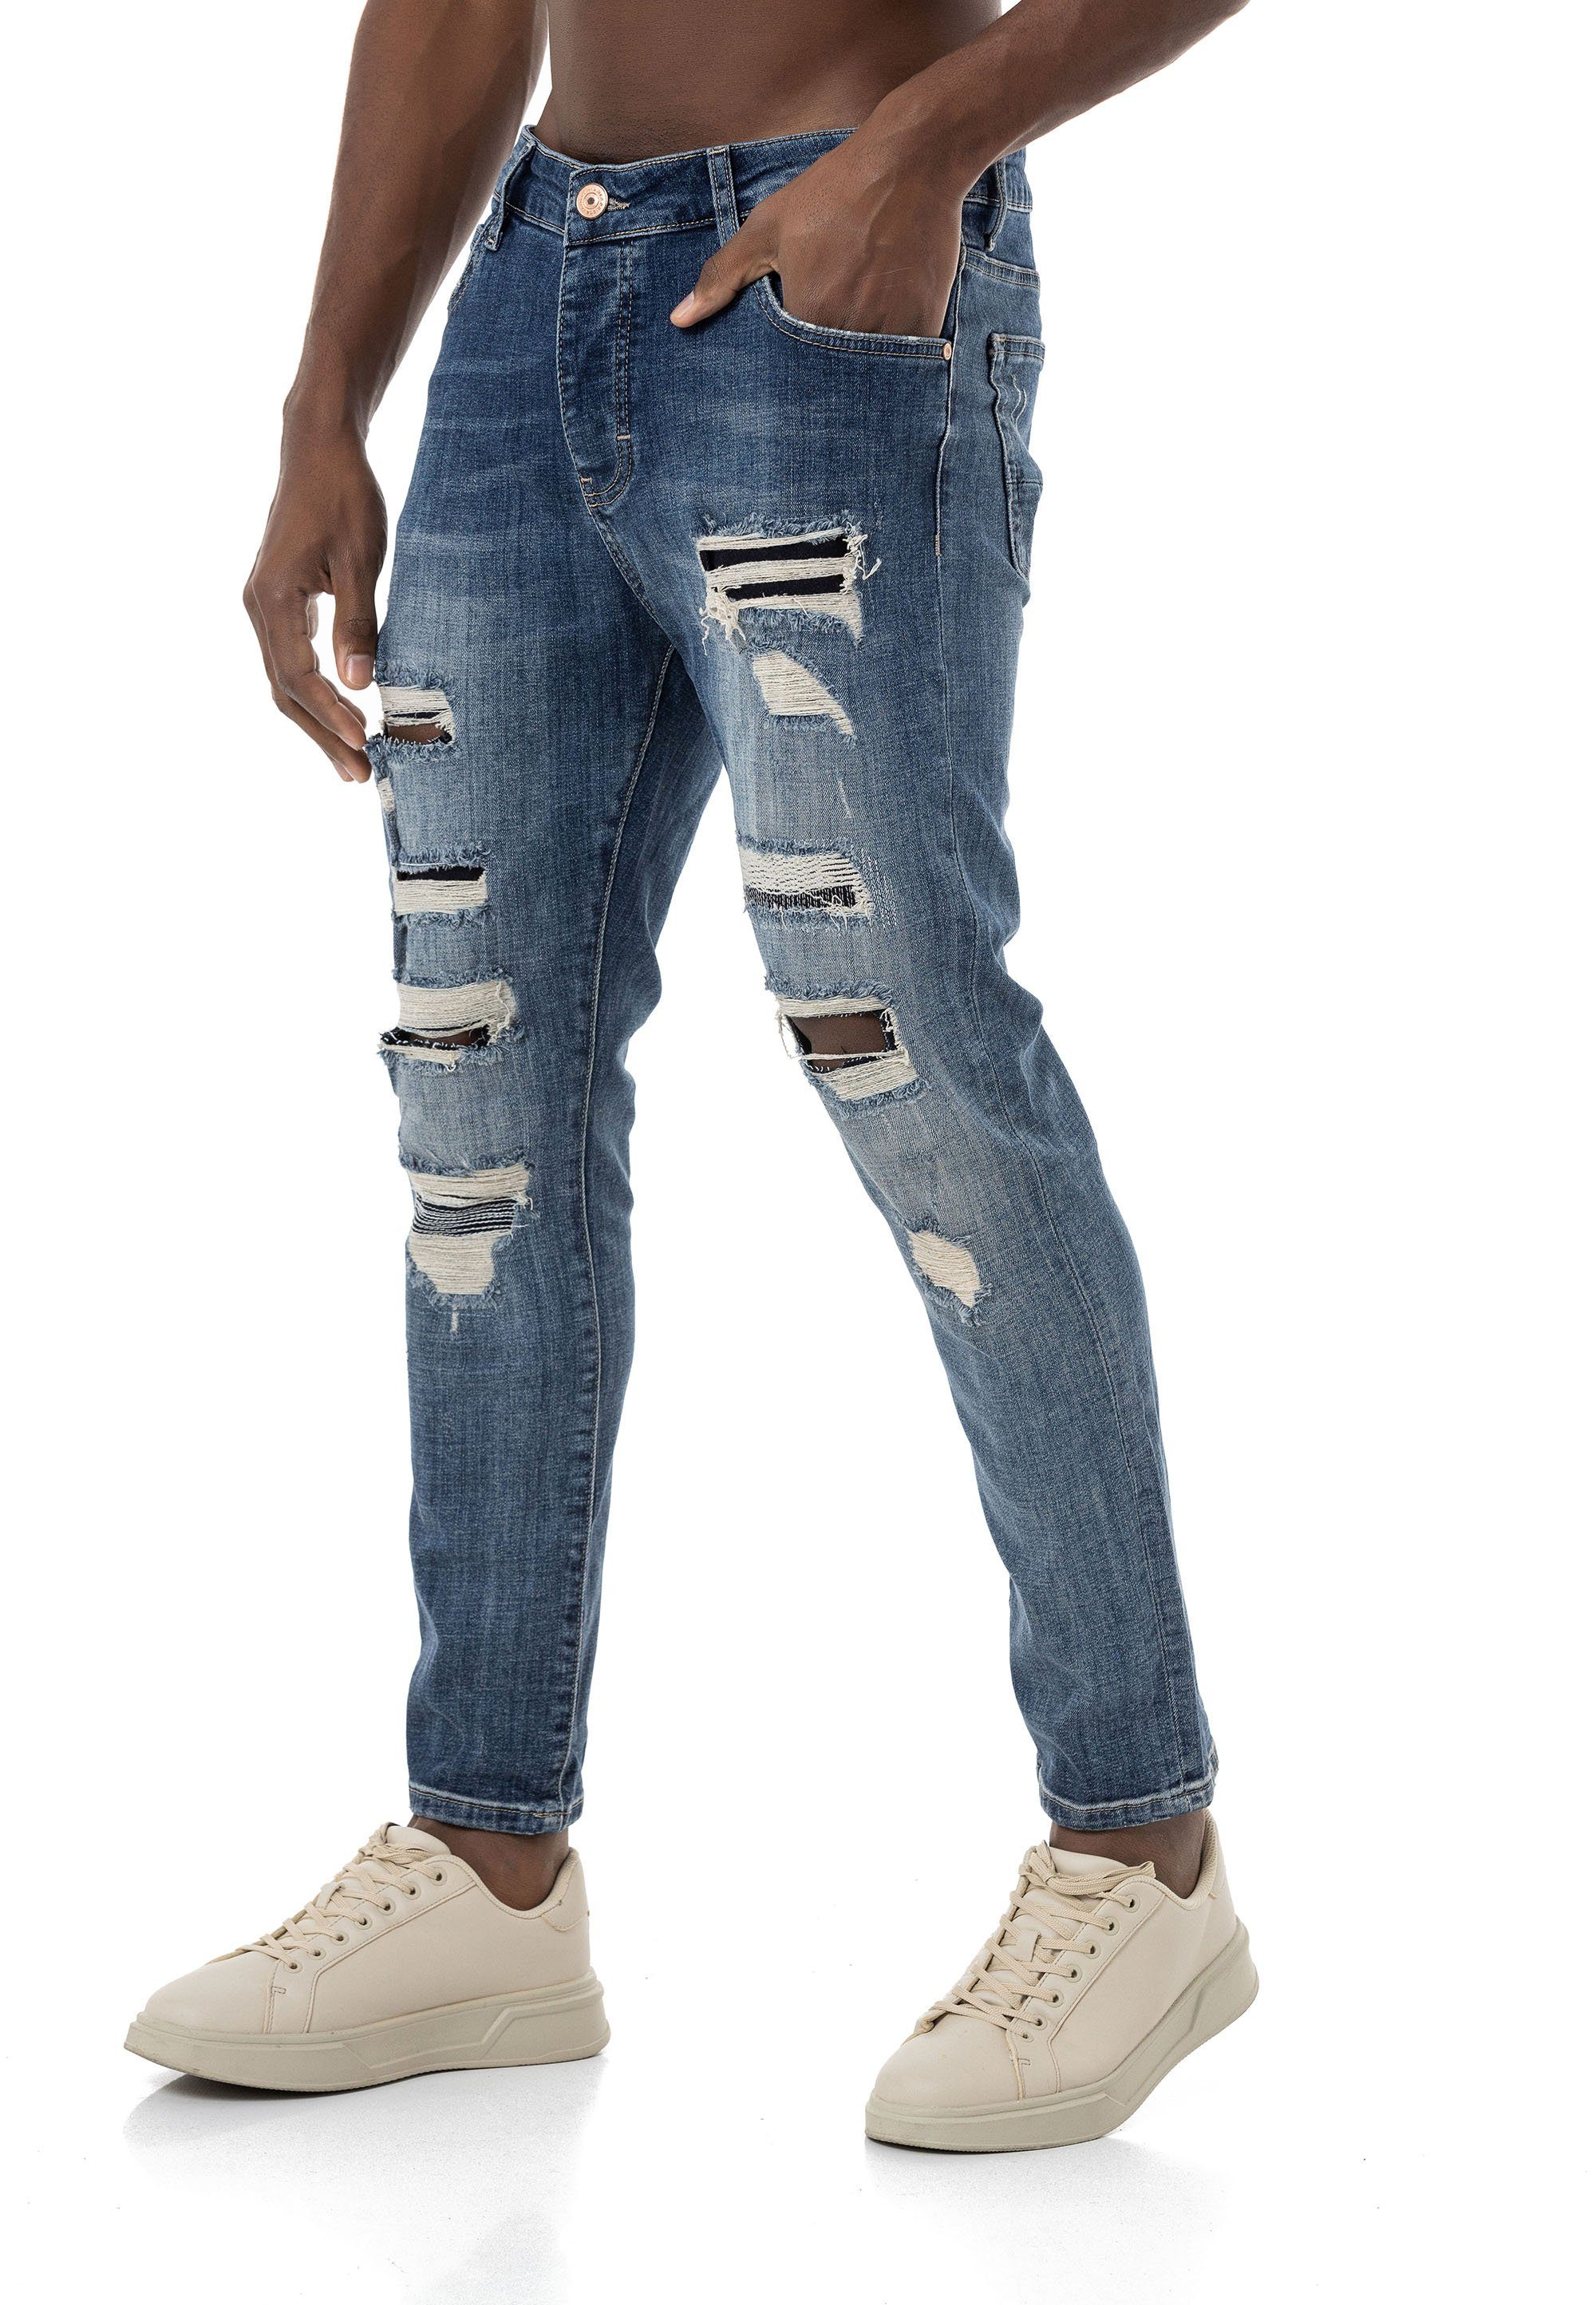 RedBridge Destroyed-Jeans lässige Denim Blau 5-Pocket-Style Hose